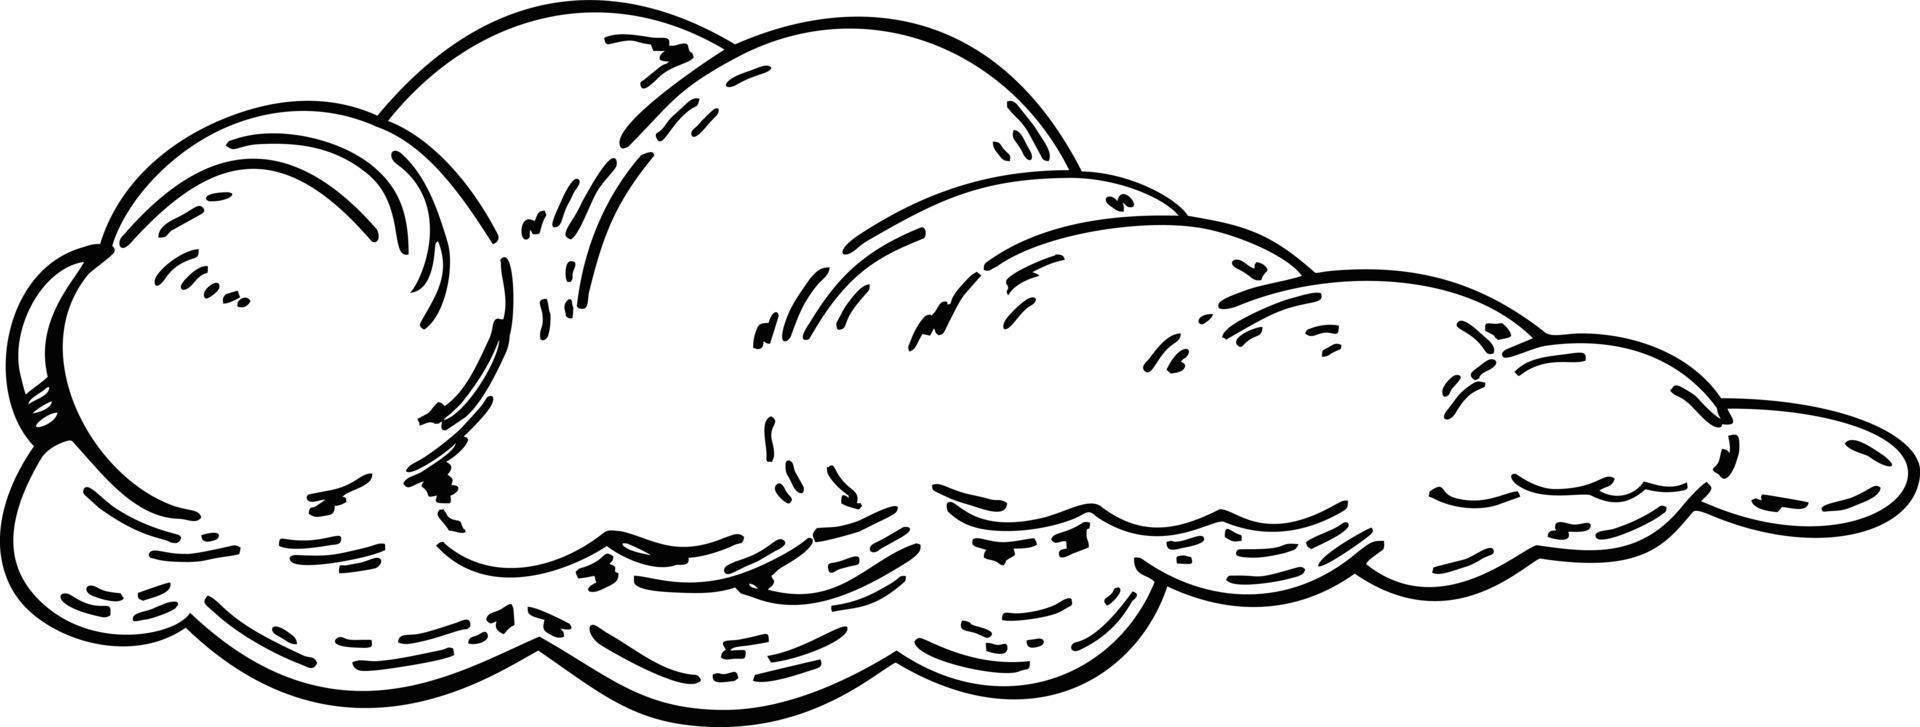 nube en estilo retro vintage dibujado a mano. elemento de diseño de dibujos animados. ilustración vectorial vector